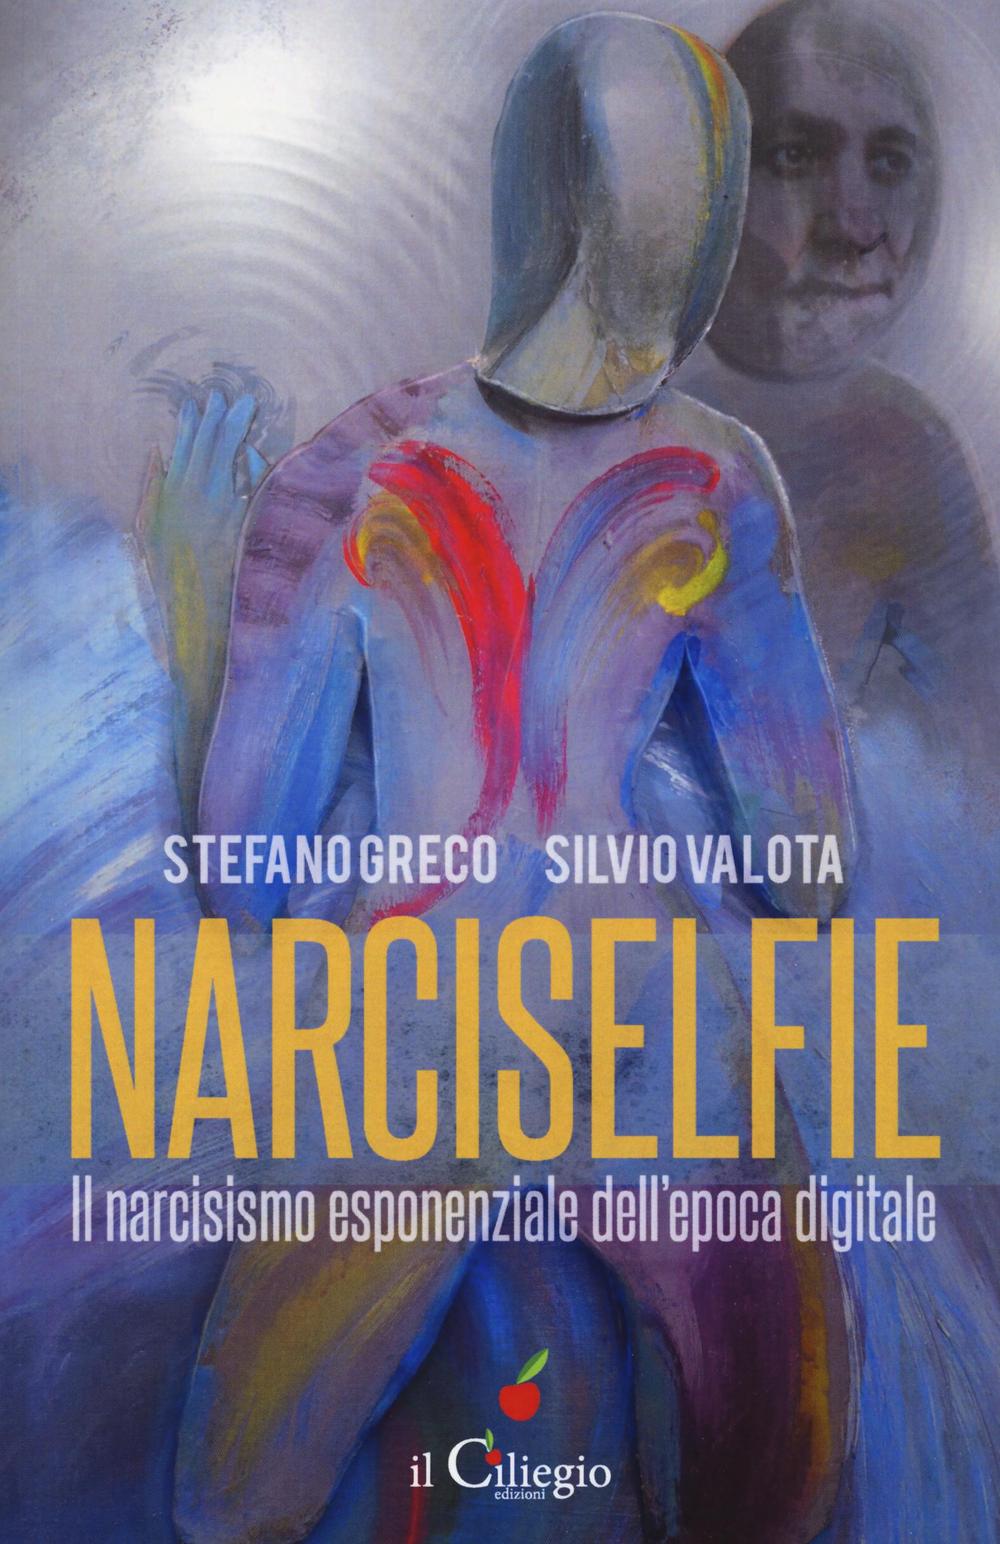 Narciselfie. Il narcisismo esponenziale dell'epoca digitale